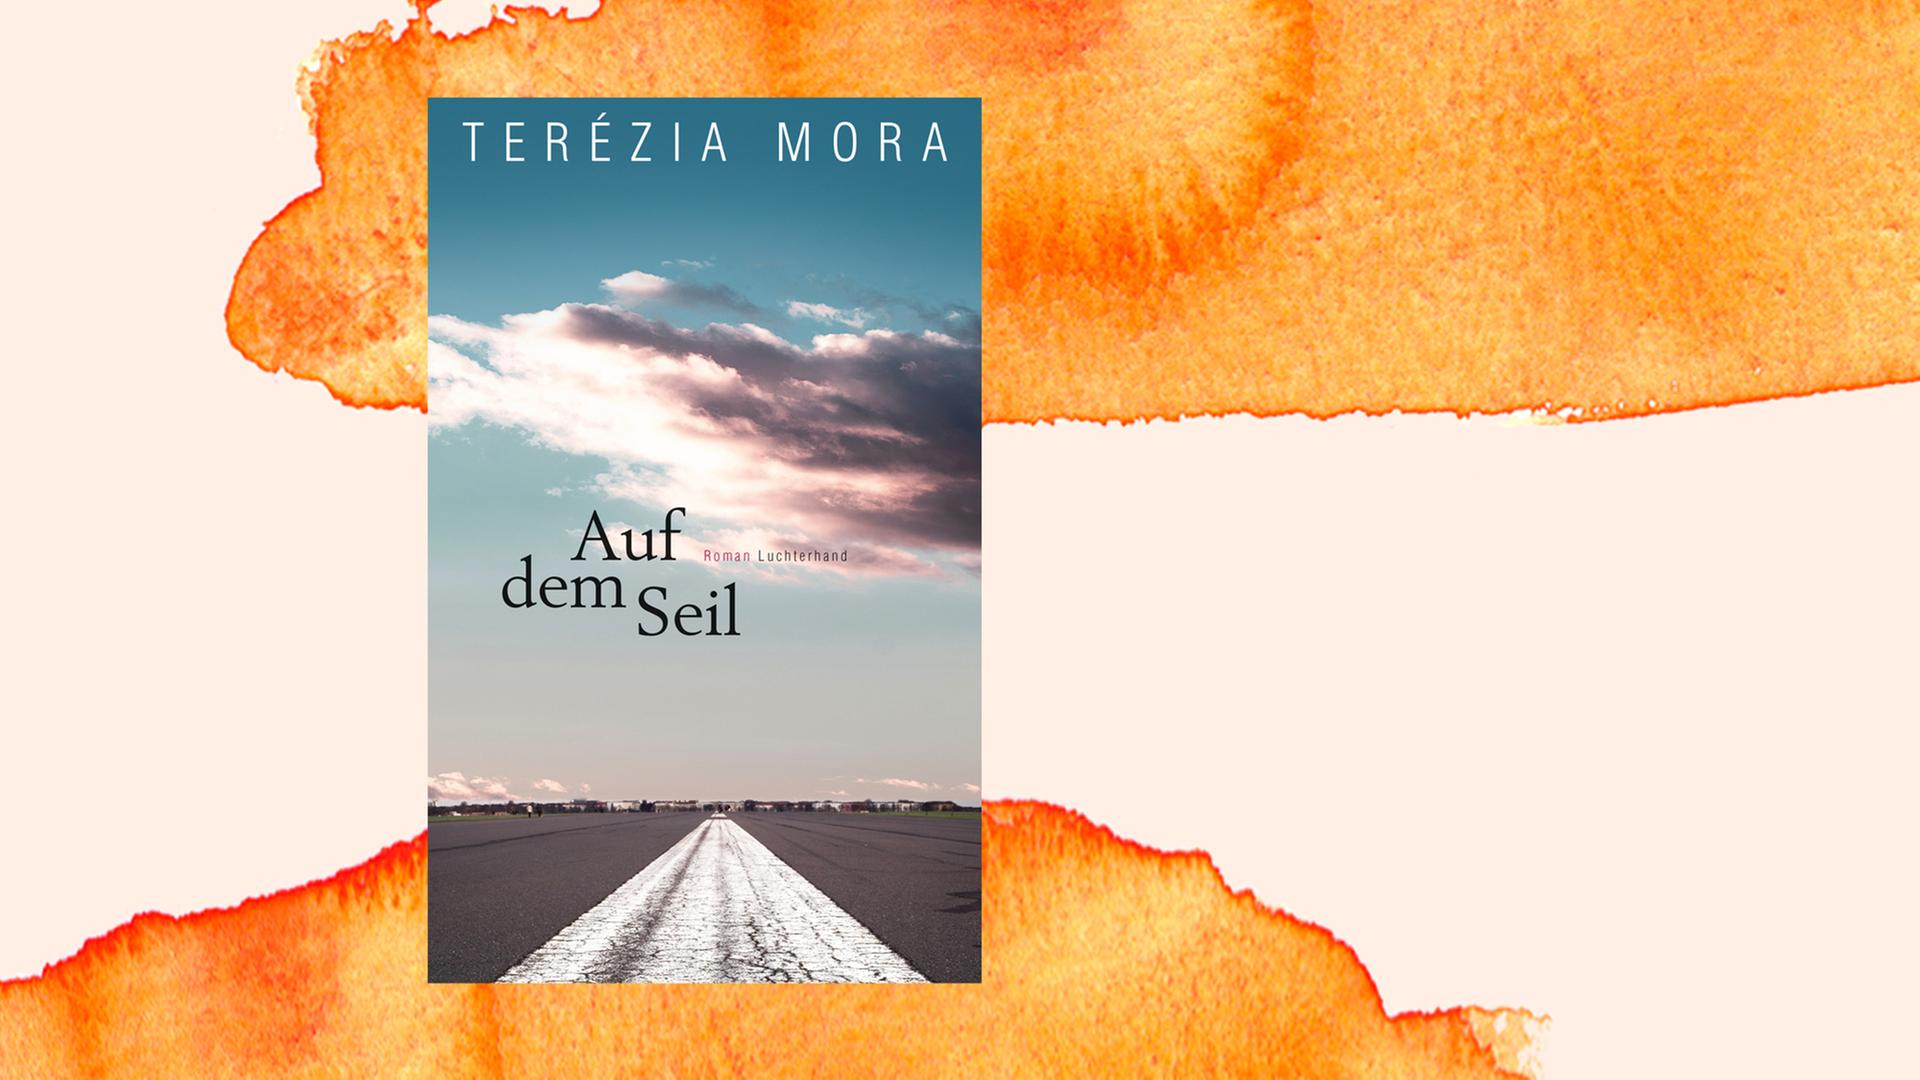 Das Cover von "Auf dem Seil" von Terézia Mora auf einem orangefarbenen Hintergrund.